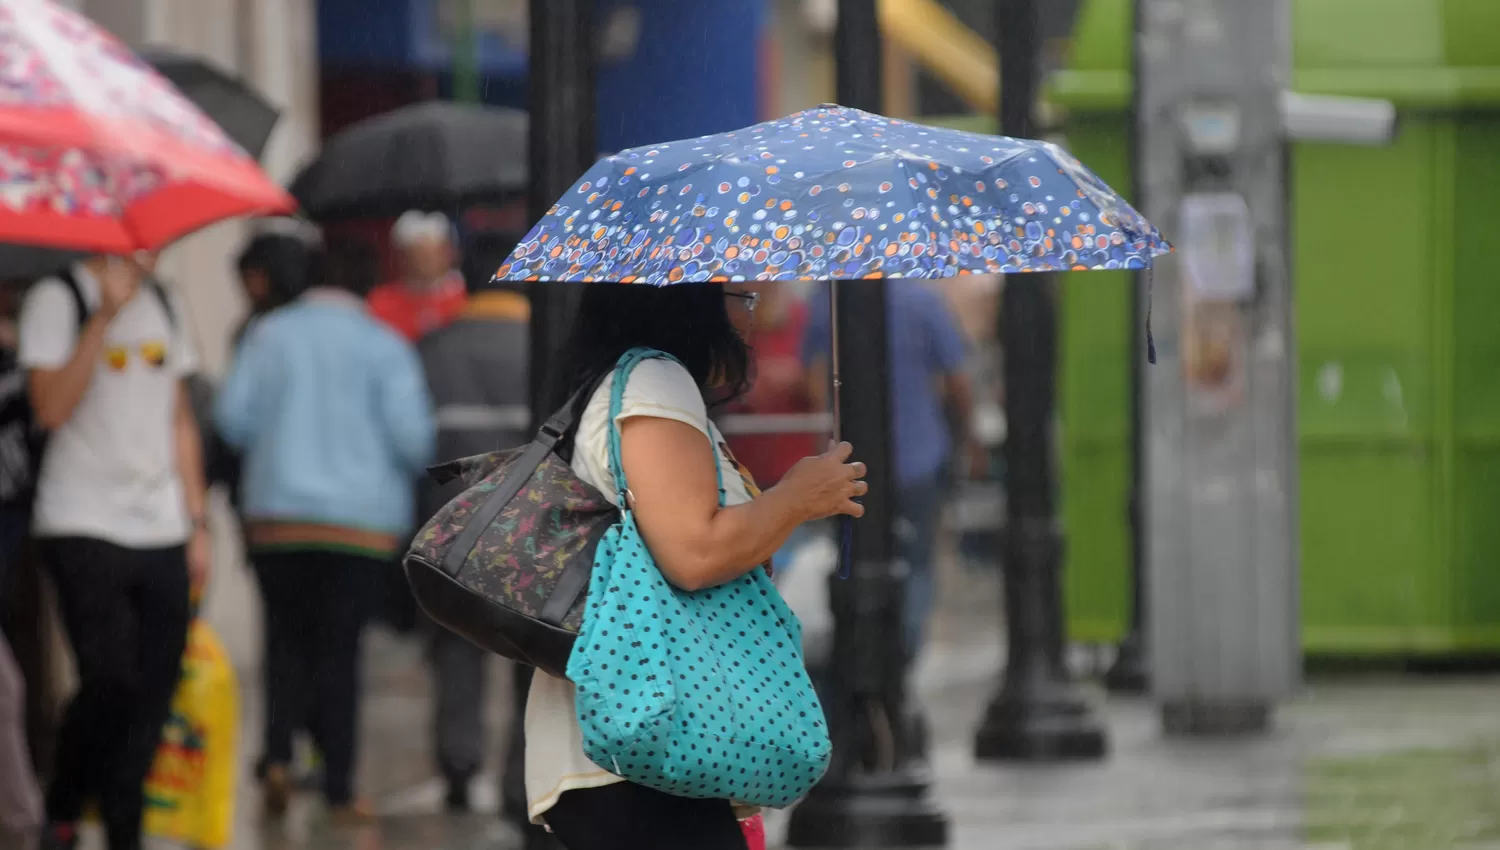 La lluvia podría arruinar los planes de muchos tucumanos.